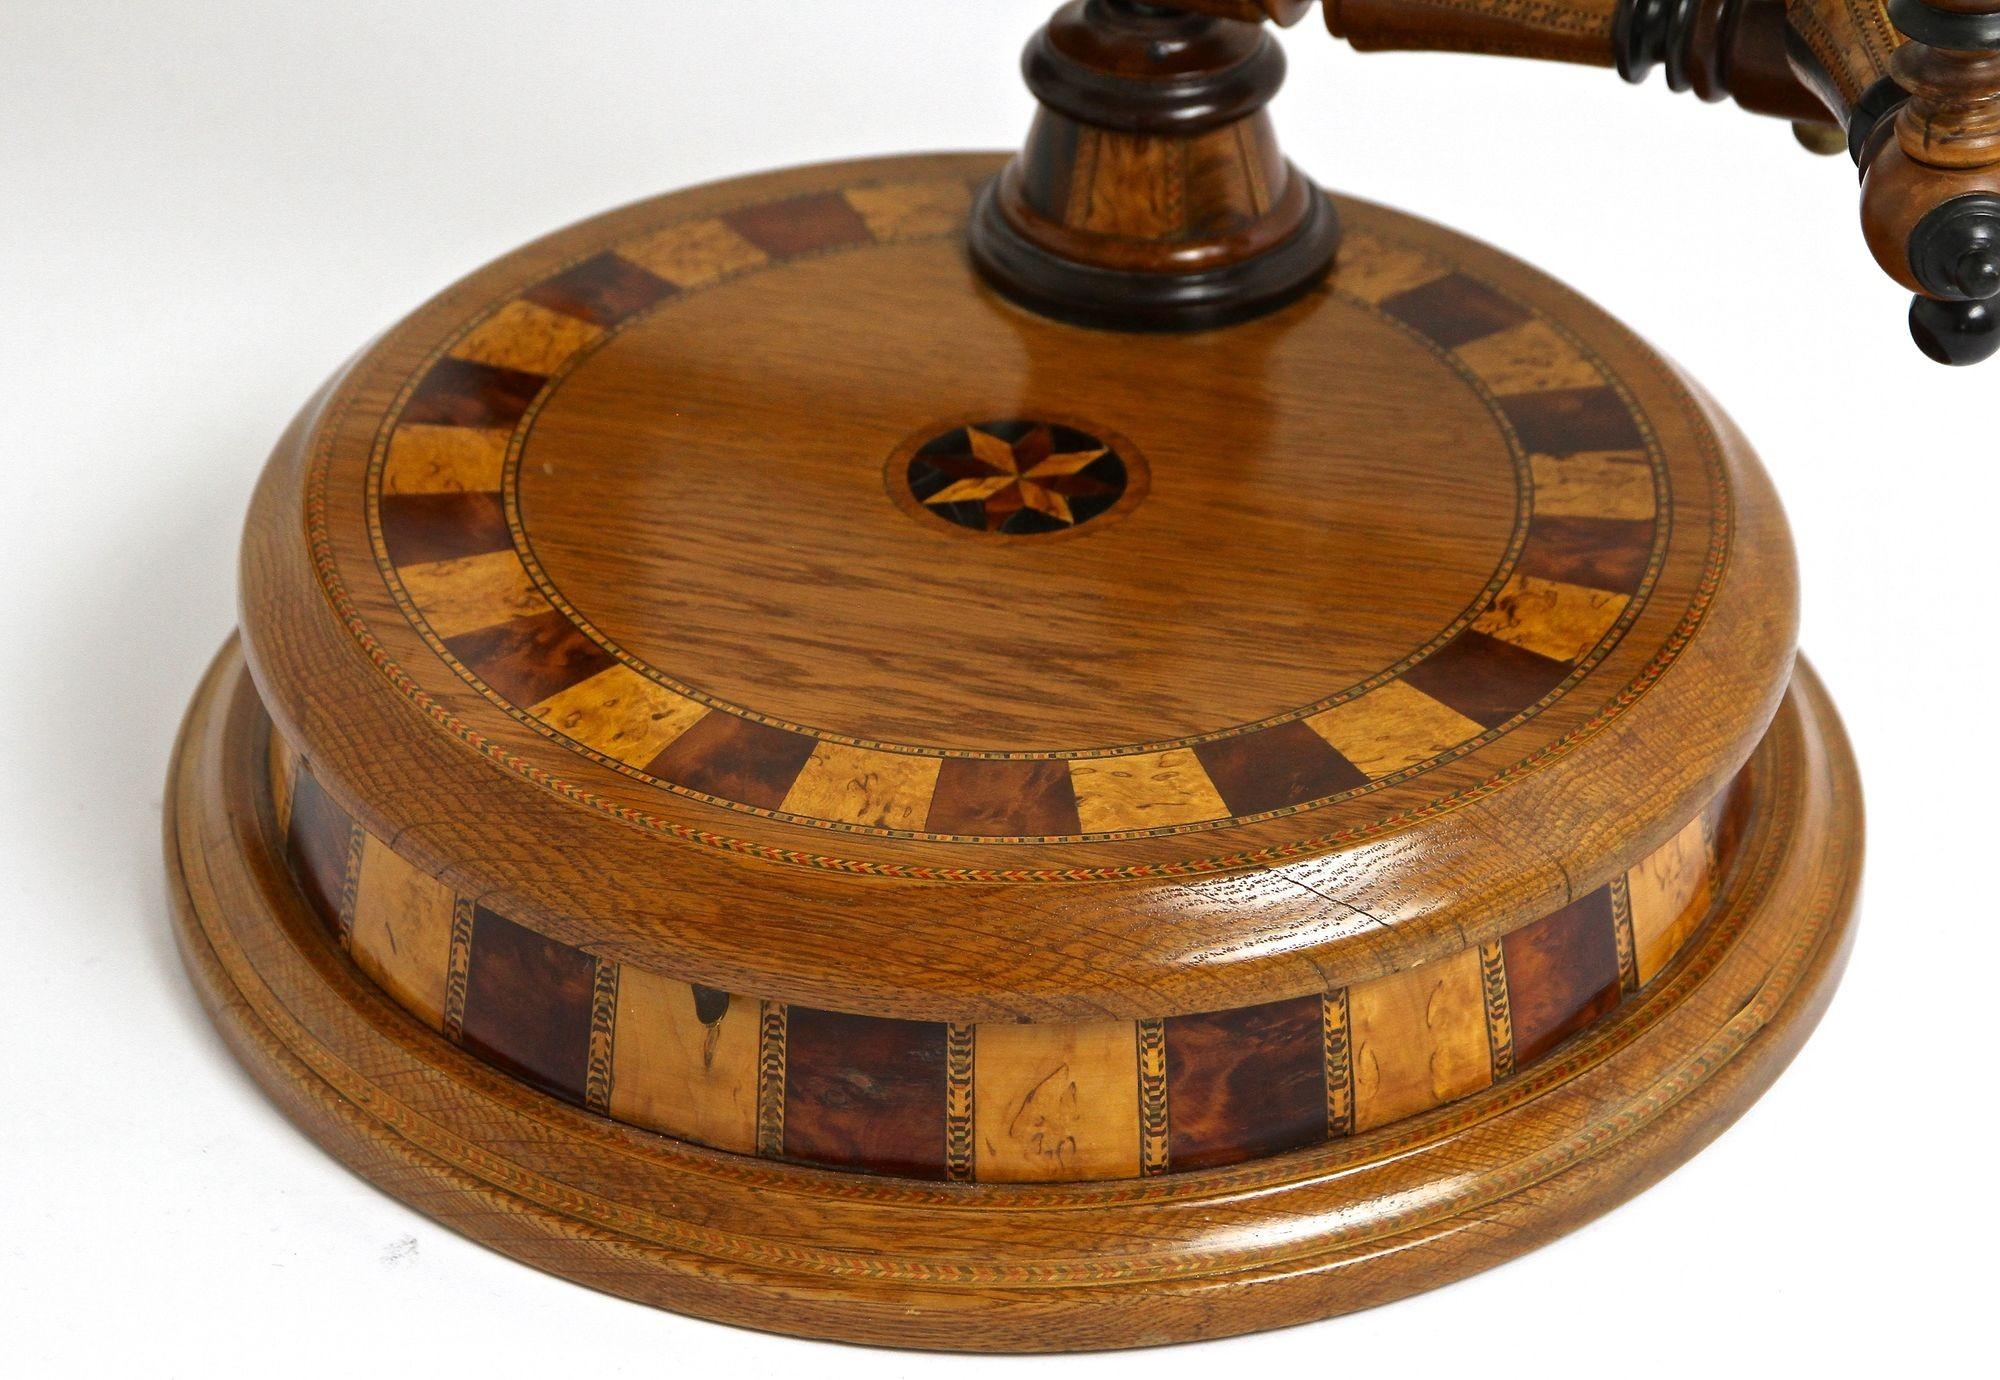 Remarquable table de toilette en bois de chêne de la fin du 19e siècle avec ses chandeliers de la période dite de l'